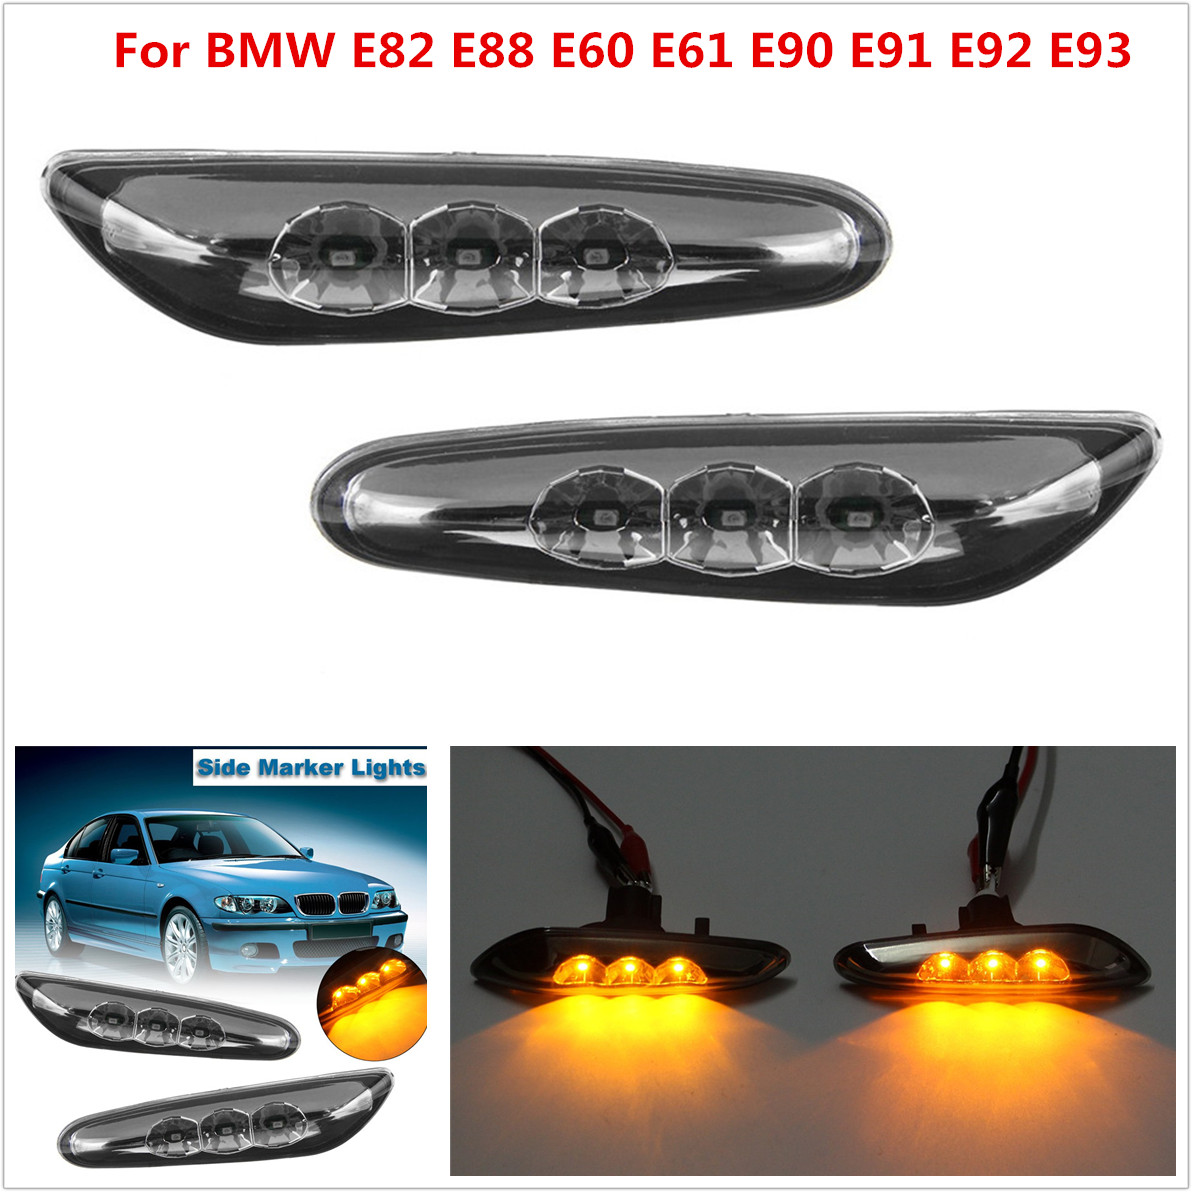 Side Marker LED Lights Turn Signal Lamps for BMW E82 E88 E60 E61 E90 E91 E92 E93